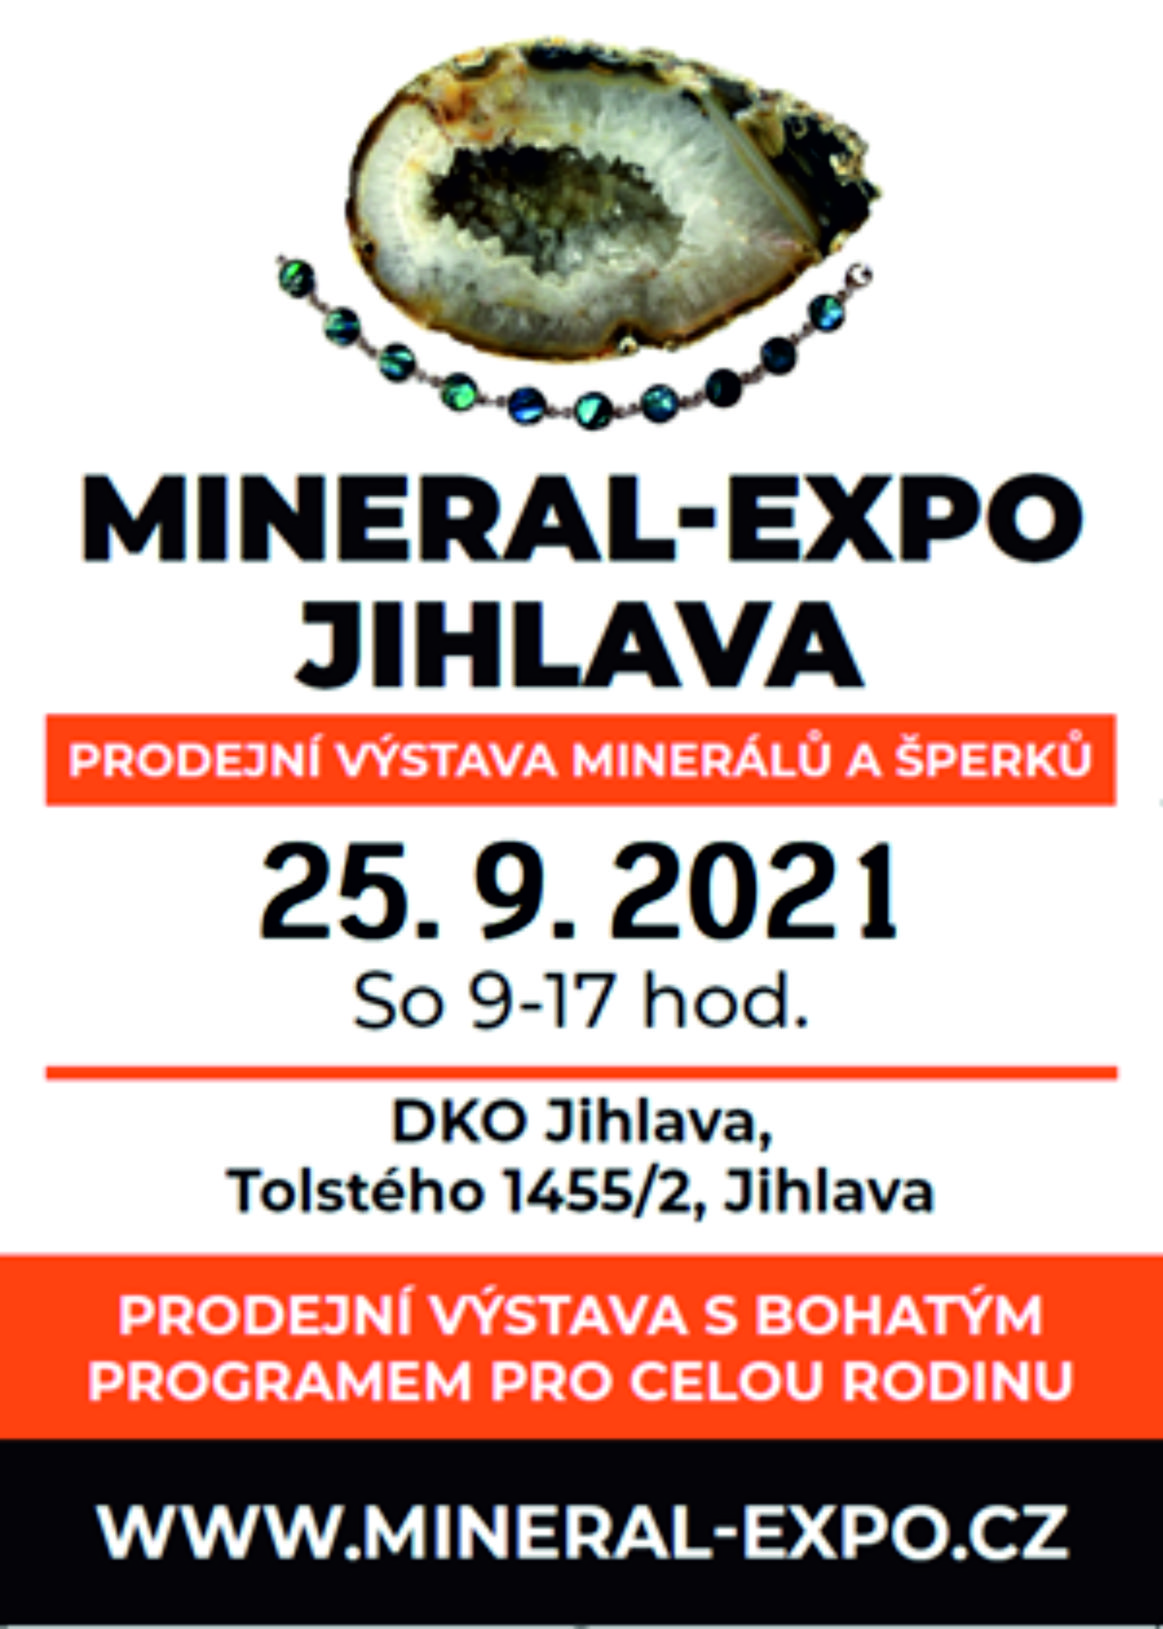 MINERAL–EXPO JIHLAVA